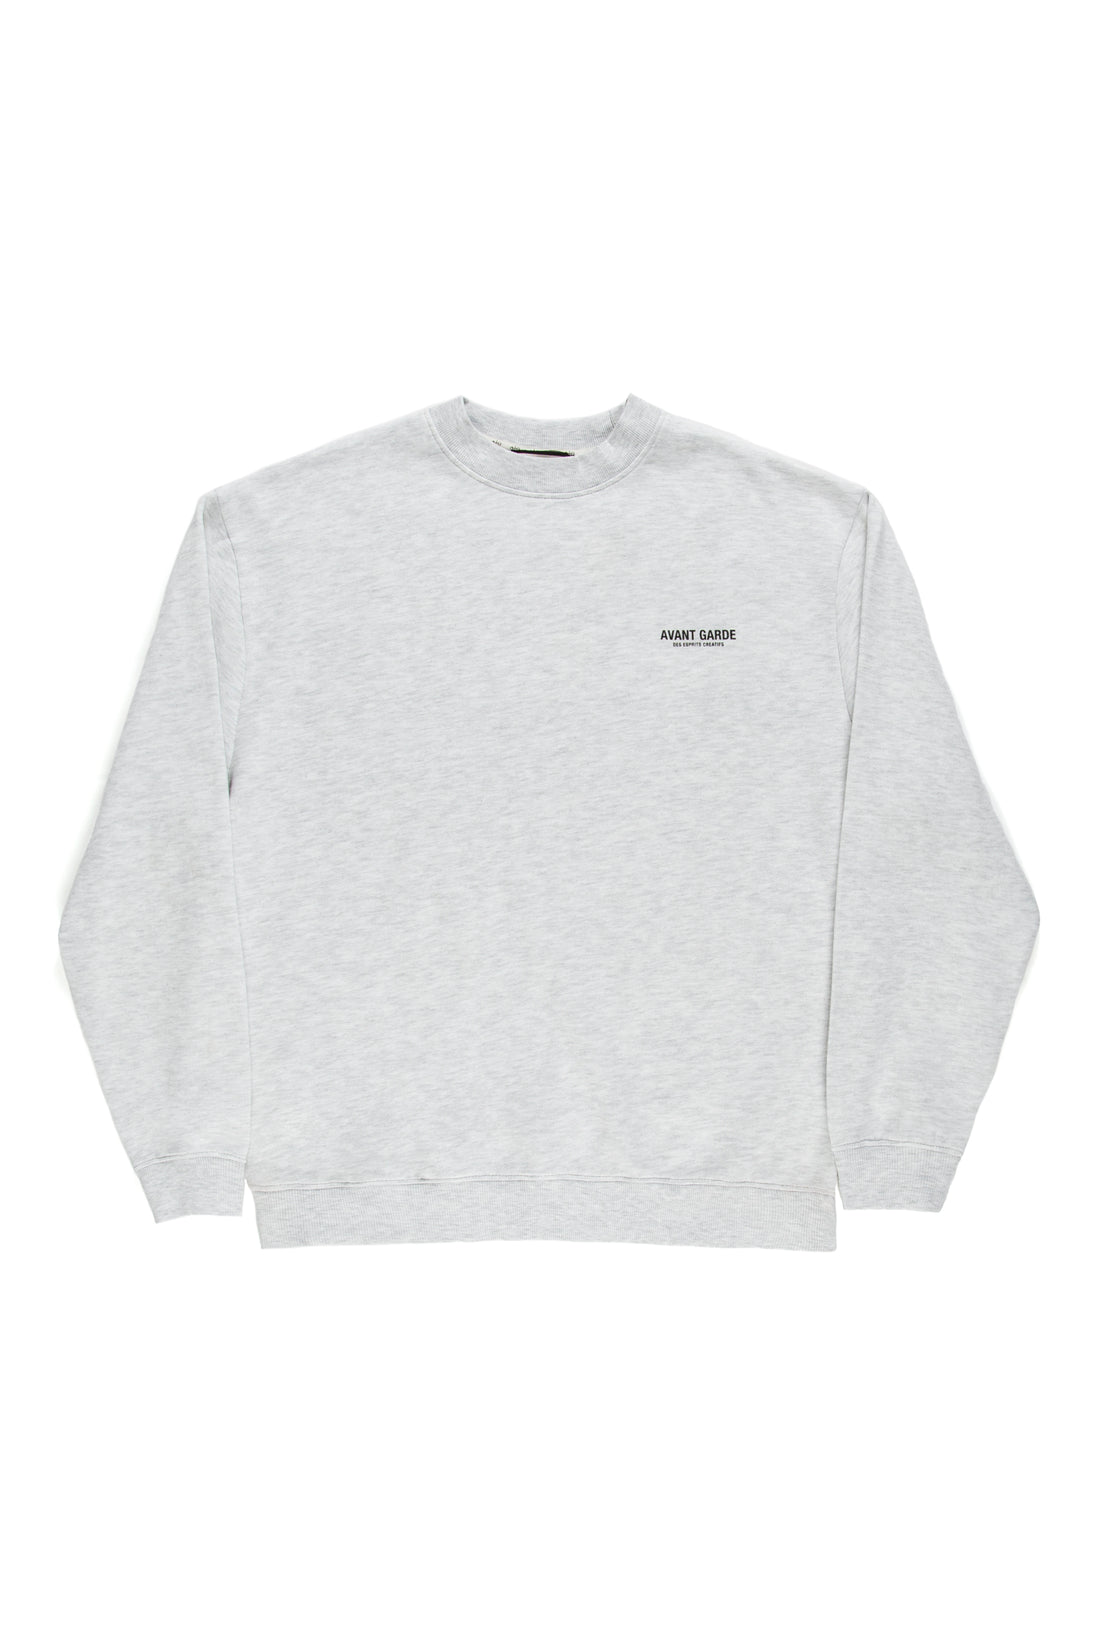 grey marl affordable sweatshirt